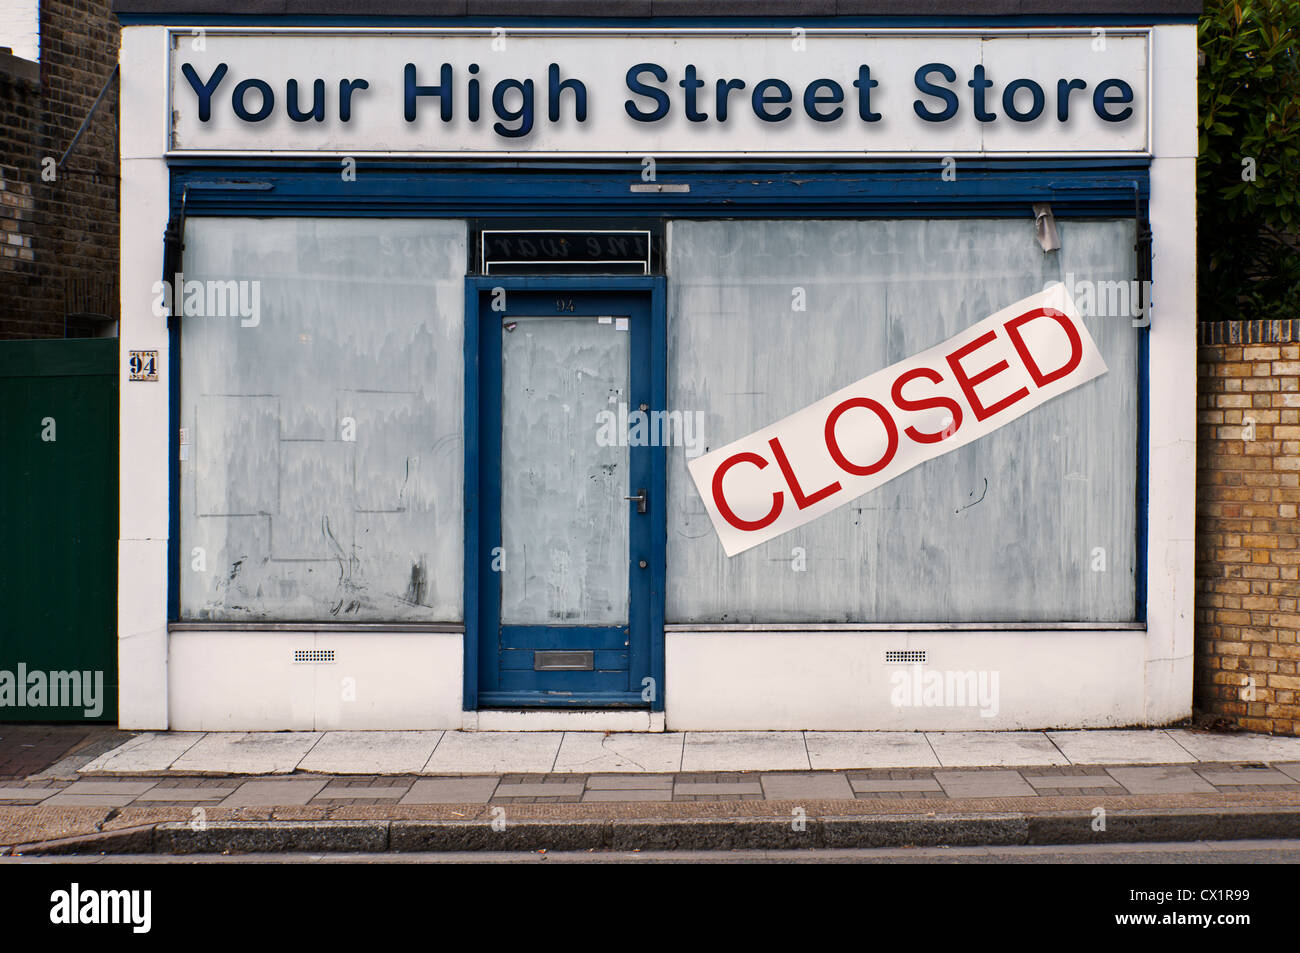 Avant d'un magasin fermé - votre grand magasin - Notion de droit Banque D'Images